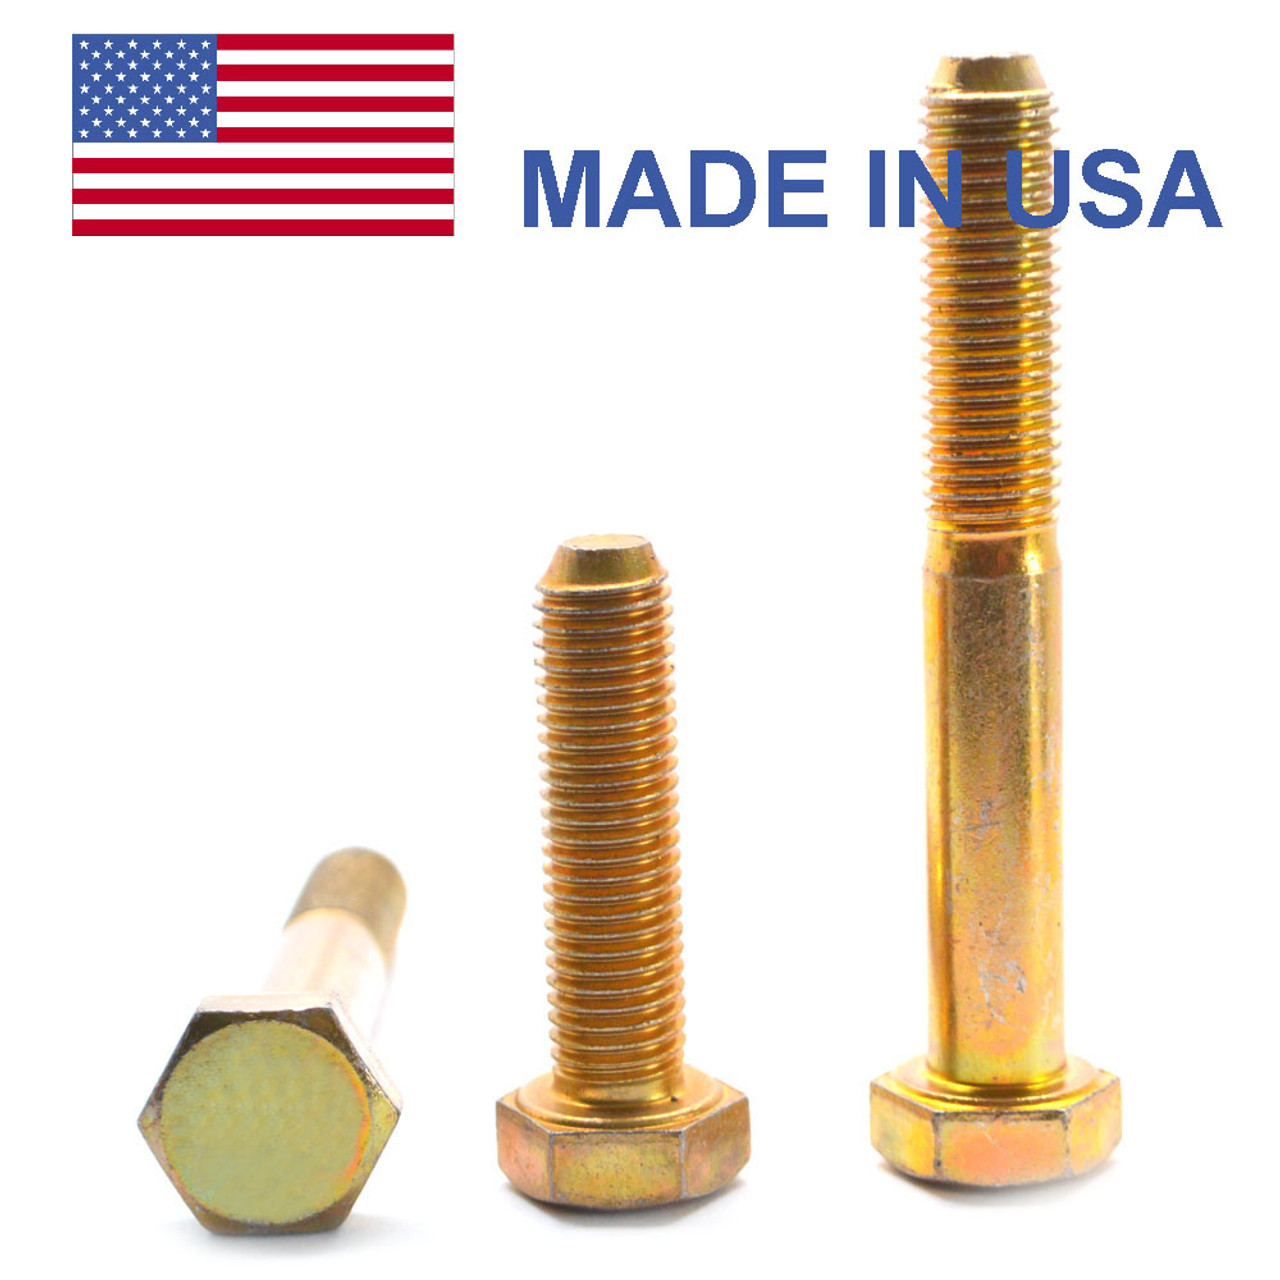 5/8"-18 x 1 3/4" (FT) Fine Thread Grade 8 Hex Cap Screw (Bolt) - USA Alloy Steel Yellow Zinc Plated